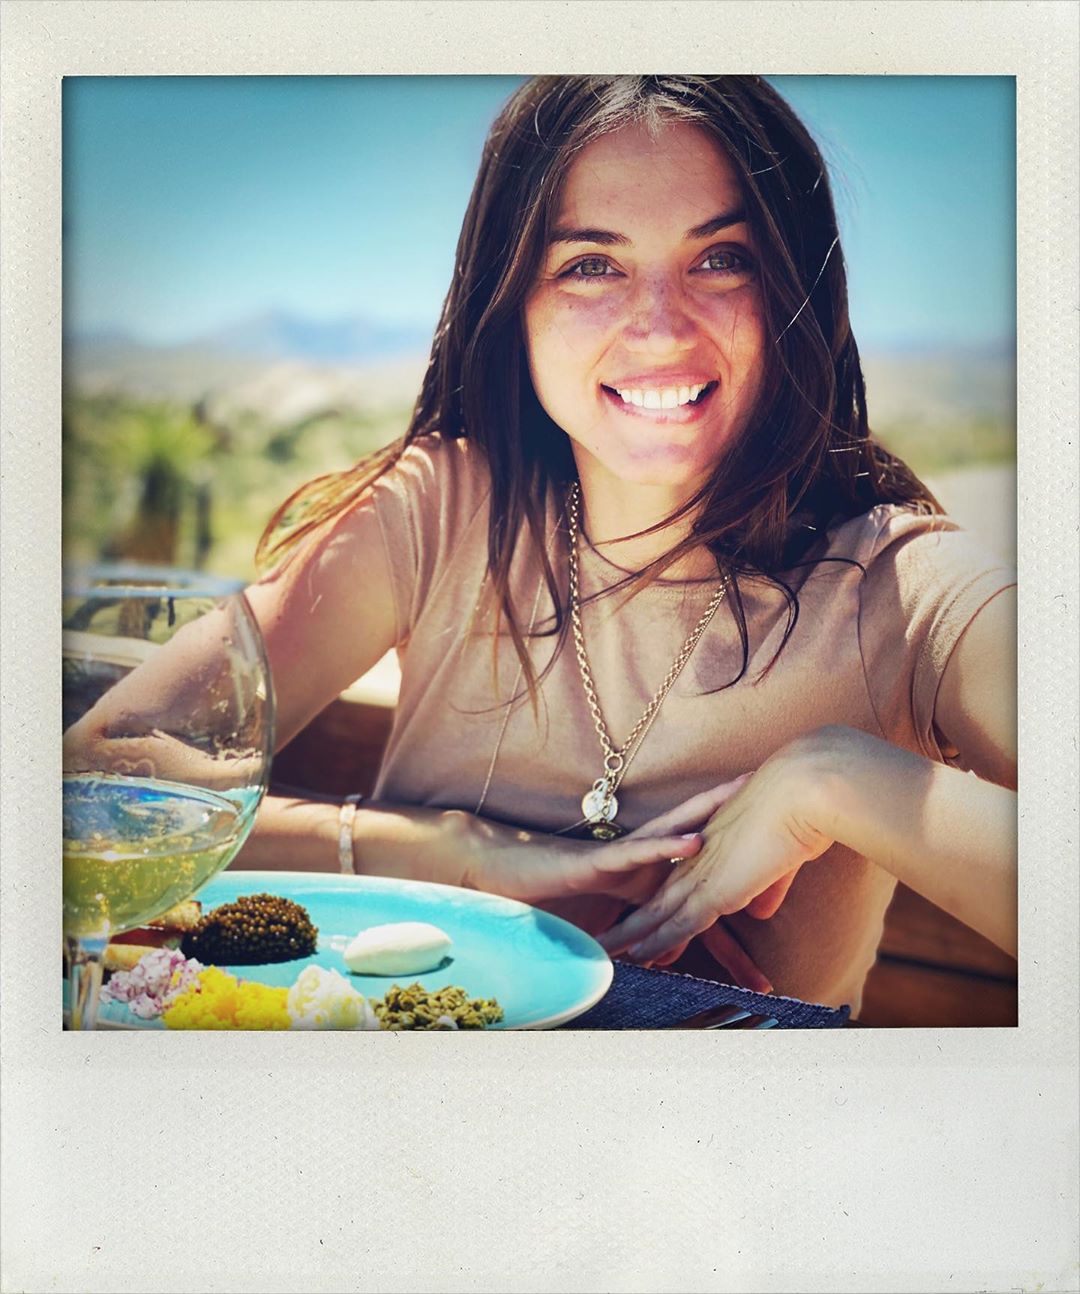 Photos n°20 : Ana de Armas Celebrates with a Cupcake!